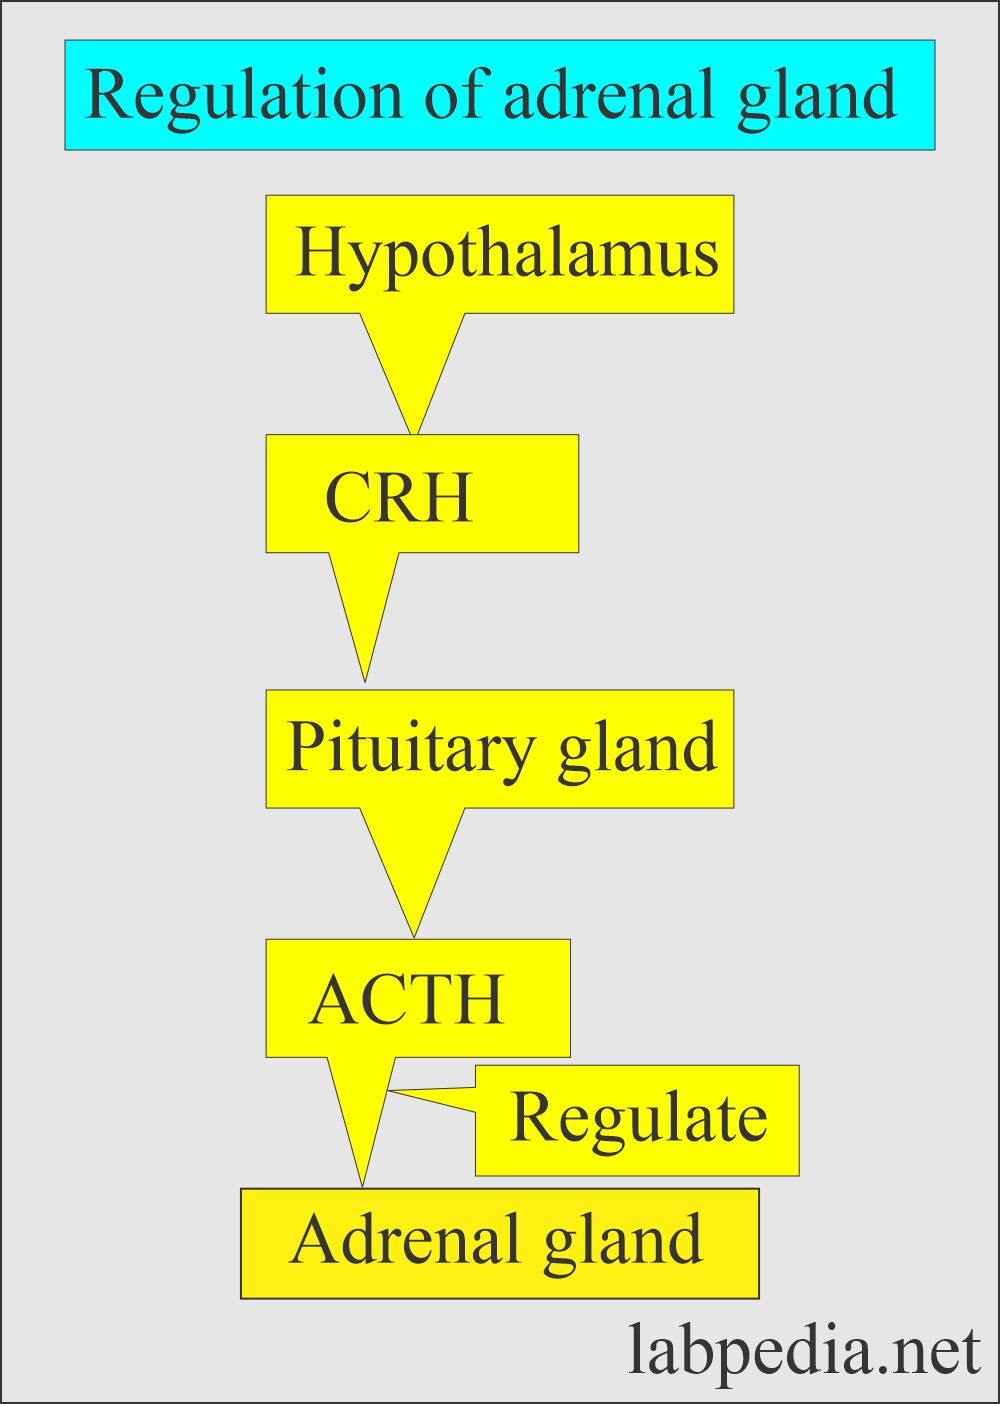 Adrenal gland regulation